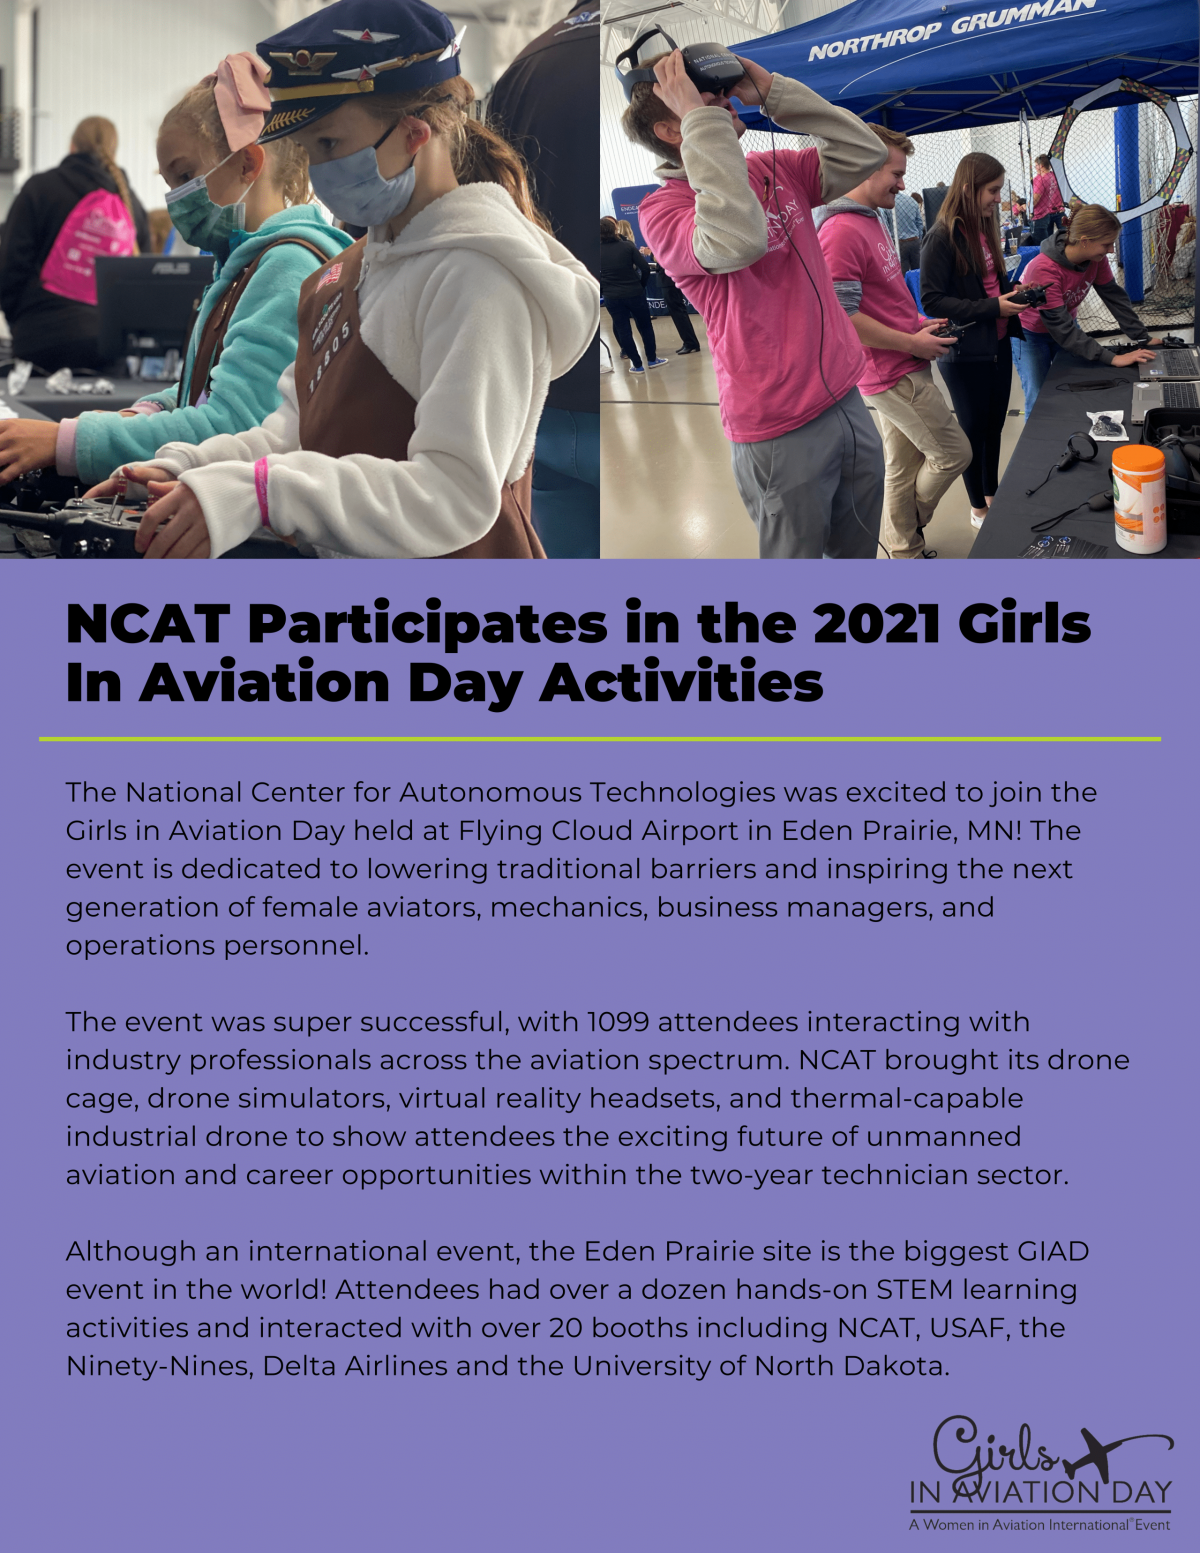 Girls in Aviation Day - Eden Prairie, MN 